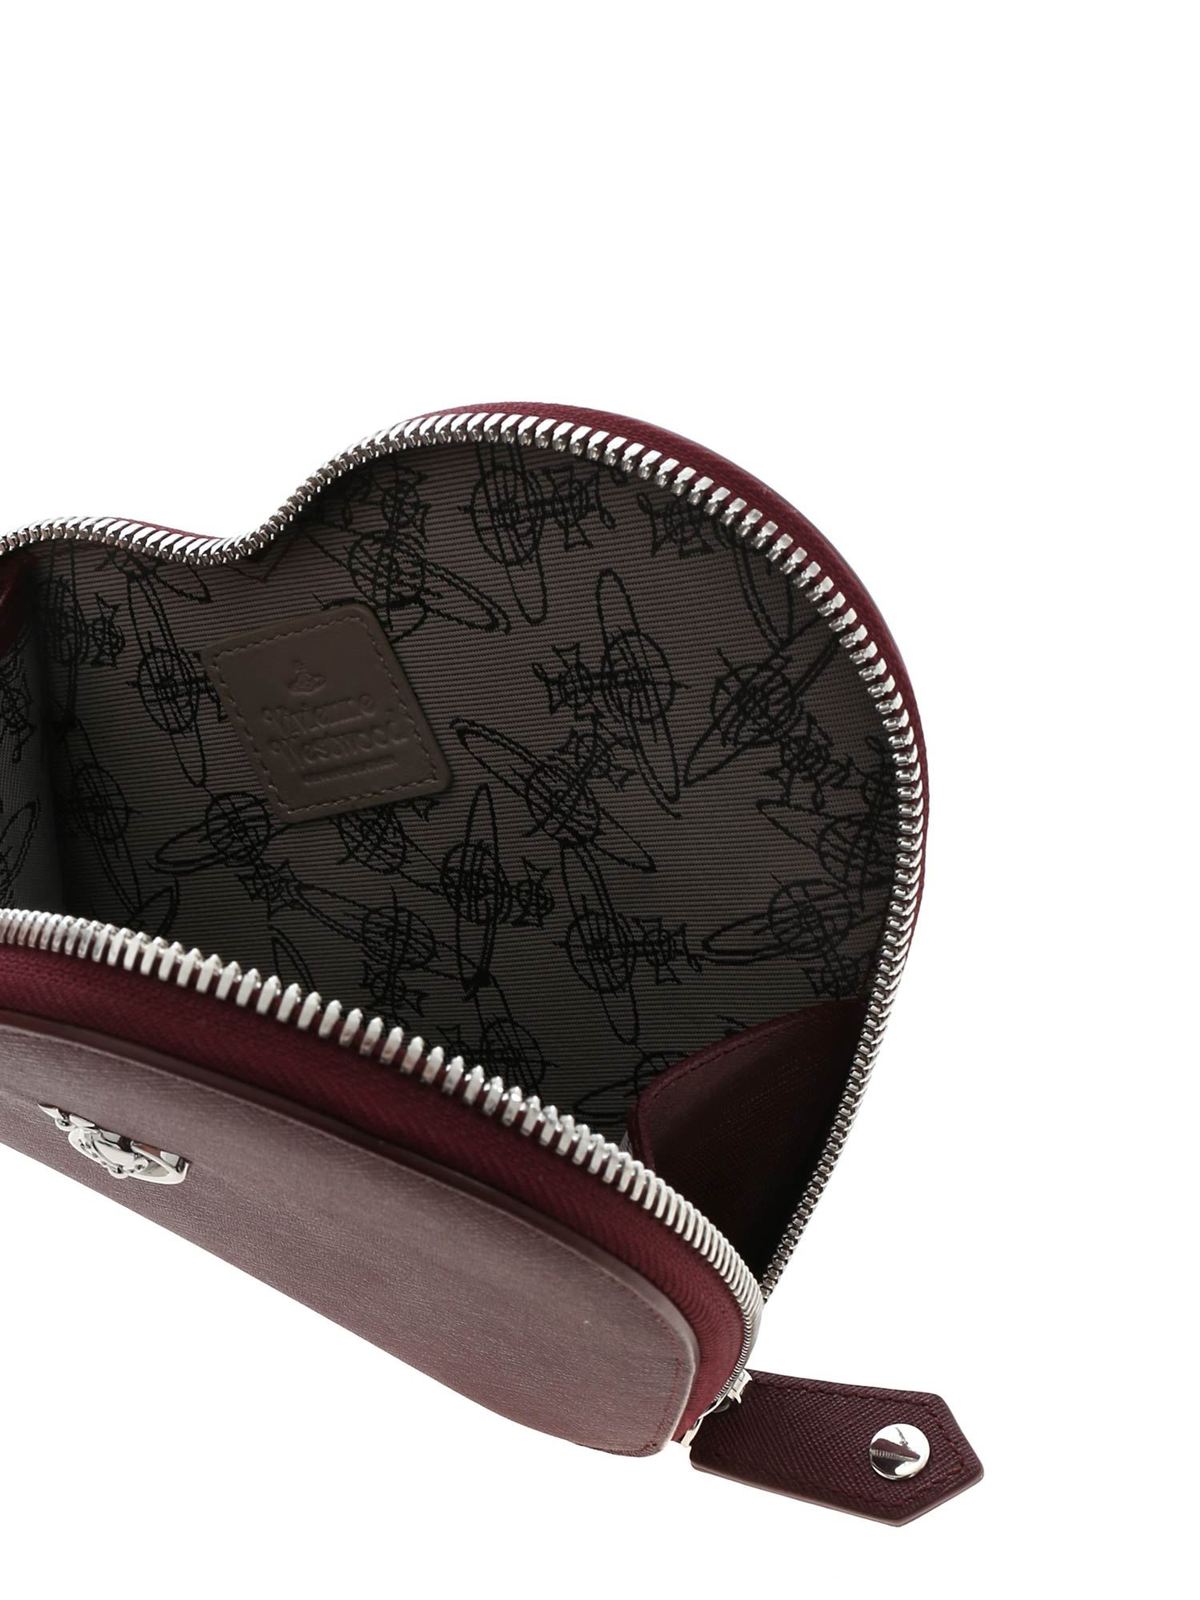 Cross body bags Vivienne Westwood - Victoria New Heart shoulder bag in black  - 5203000740565N421